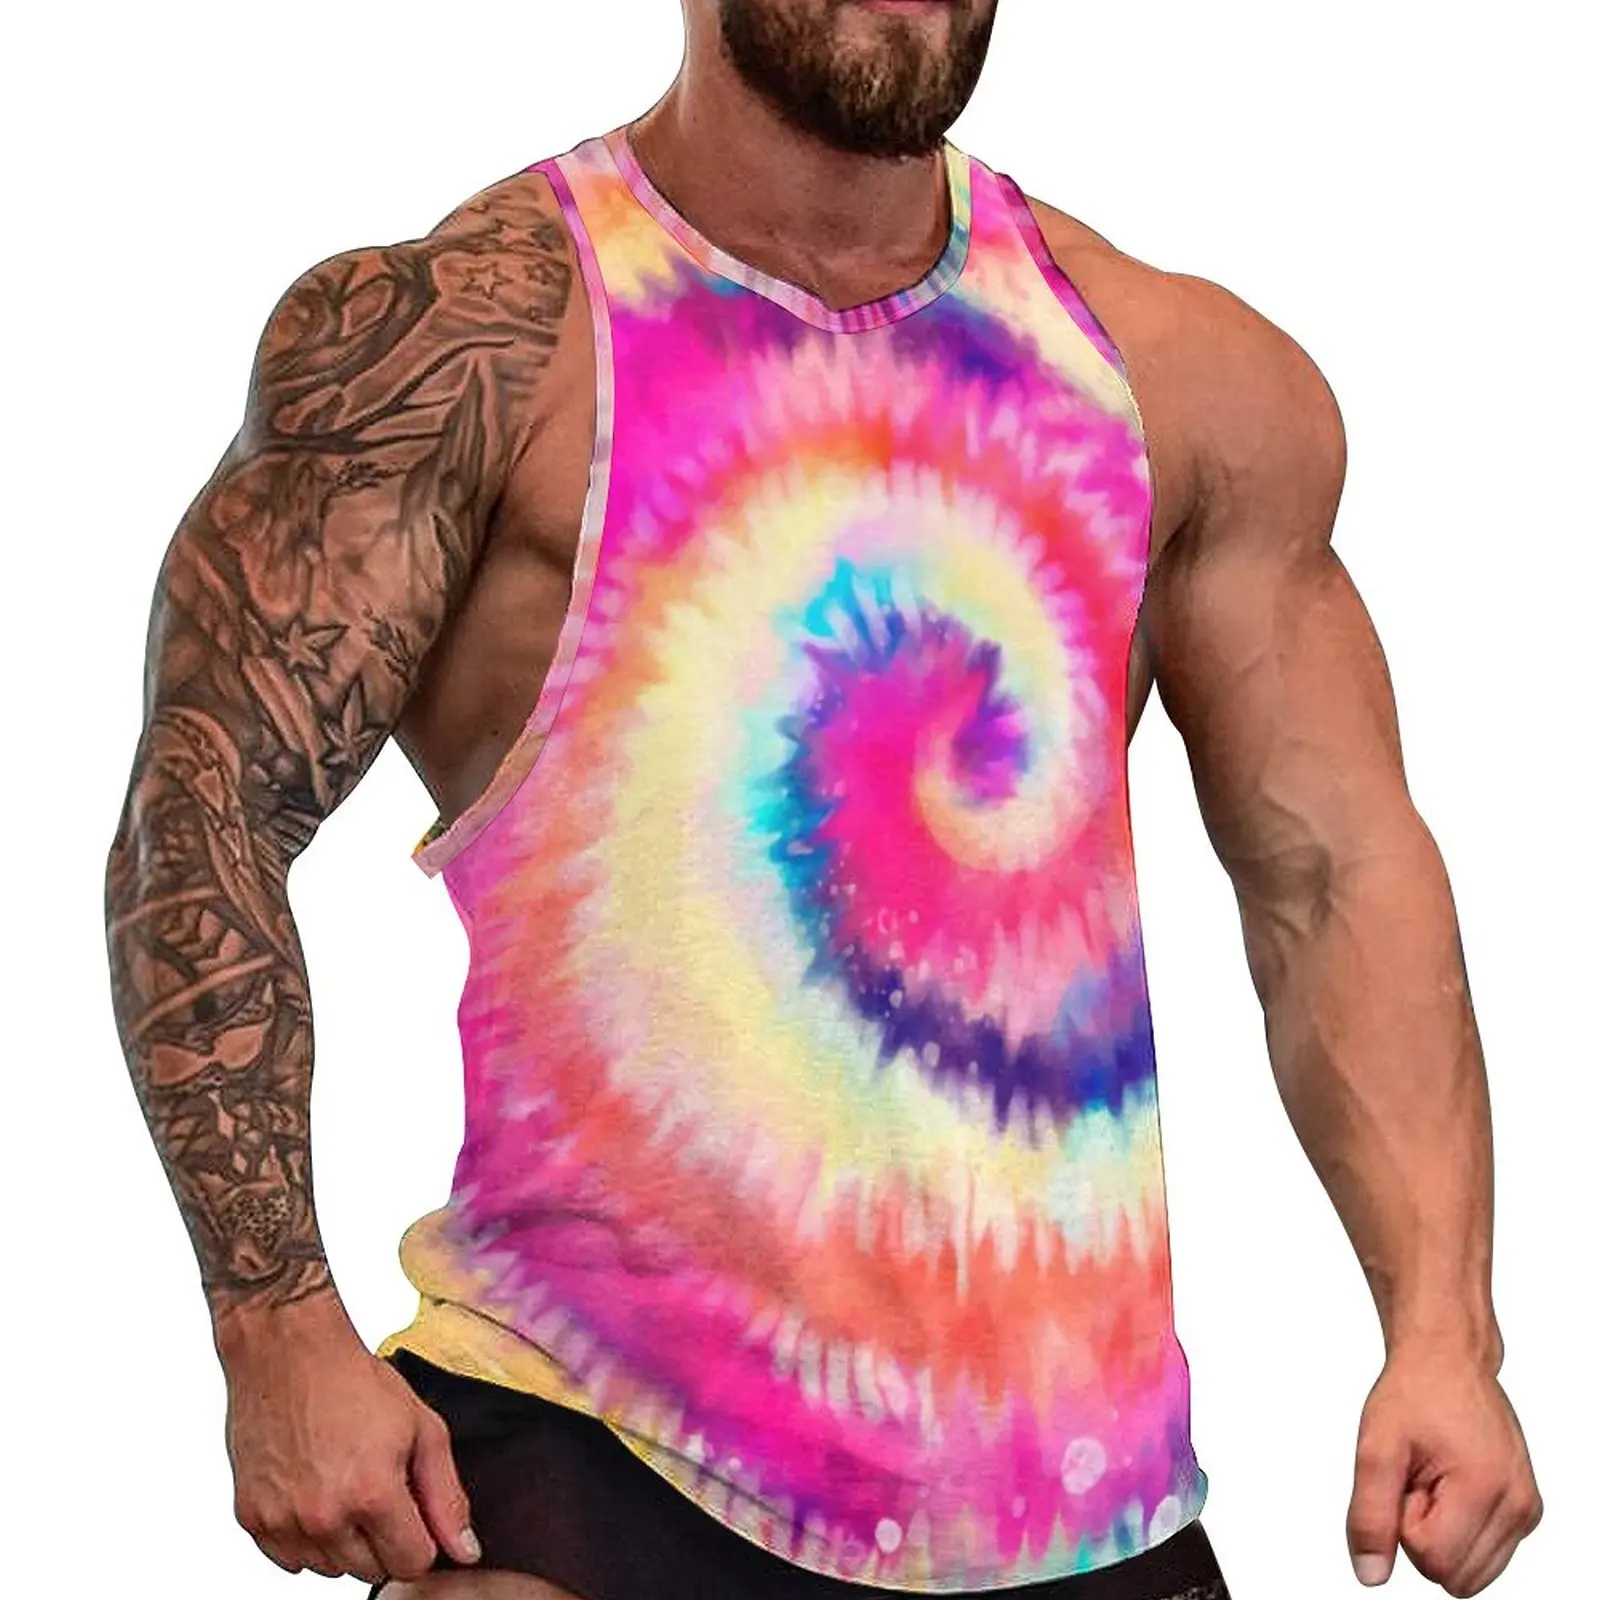 

Rainbow Swirl Tank Top Ombre Tie Dye Sportswear Tops Beach Bodybuilding Males Pattern Sleeveless Vests Plus Size 4XL 5XL